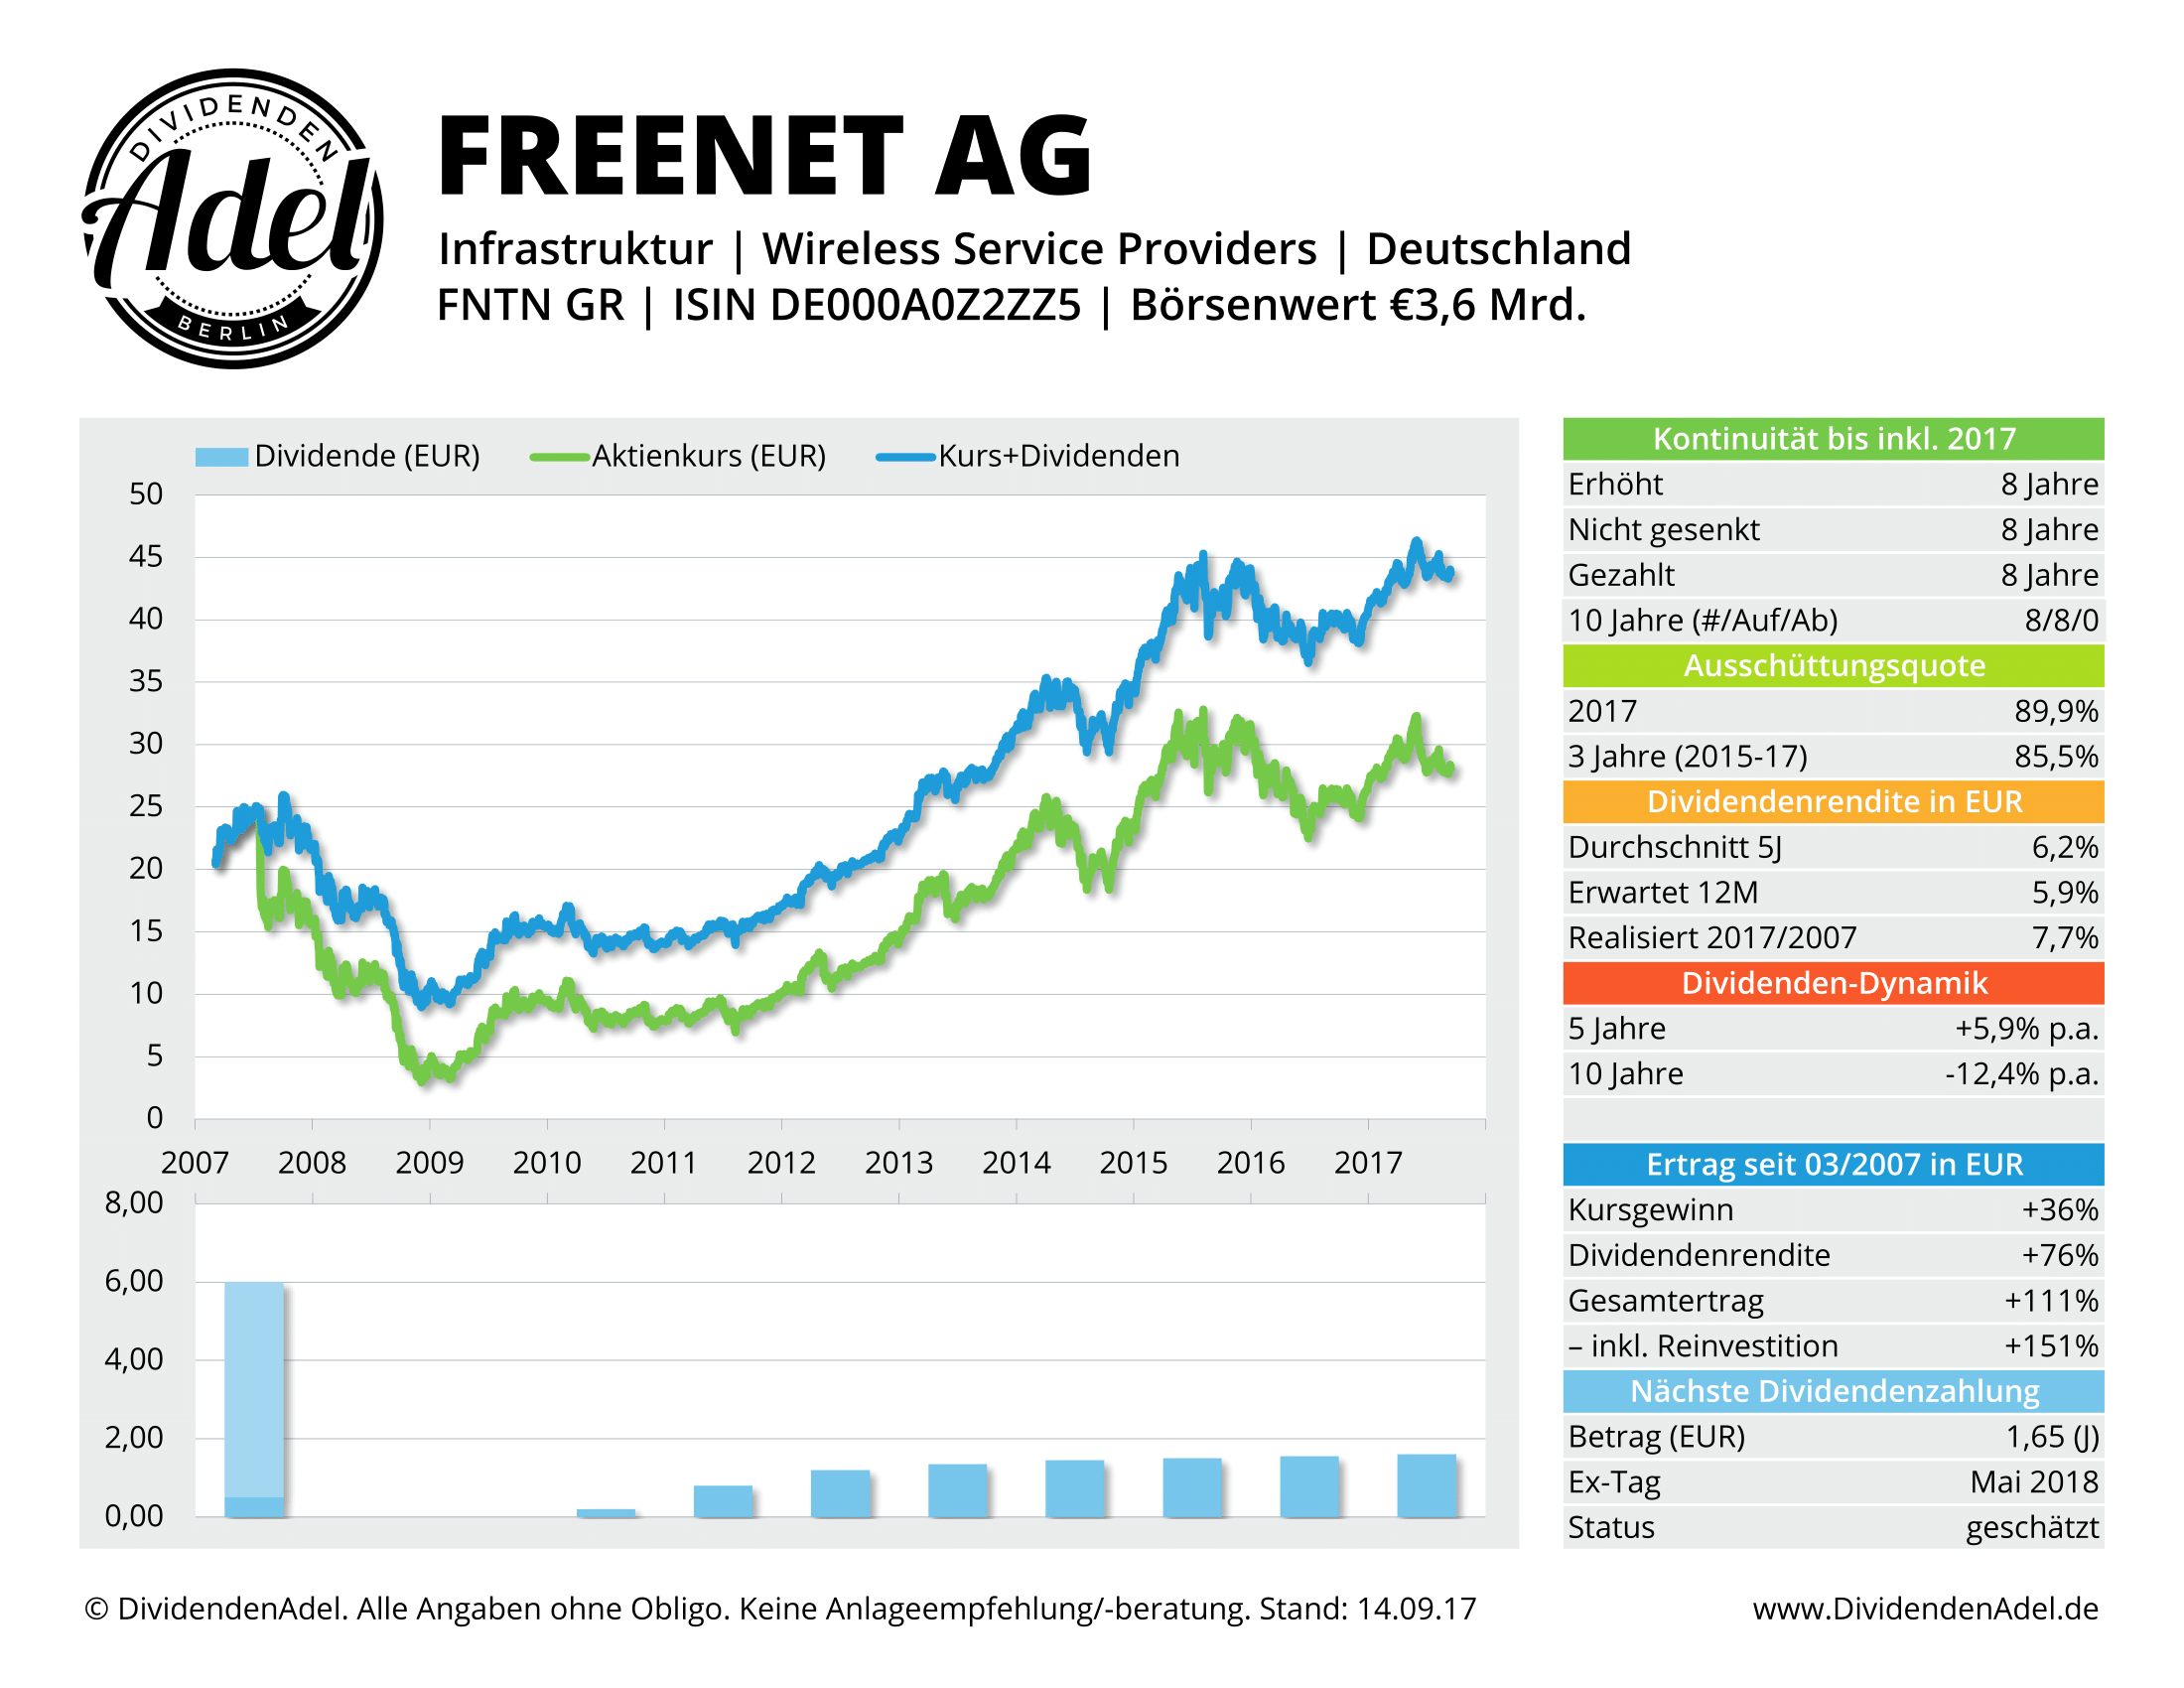 FREENET AG DividendenAdel-Profil